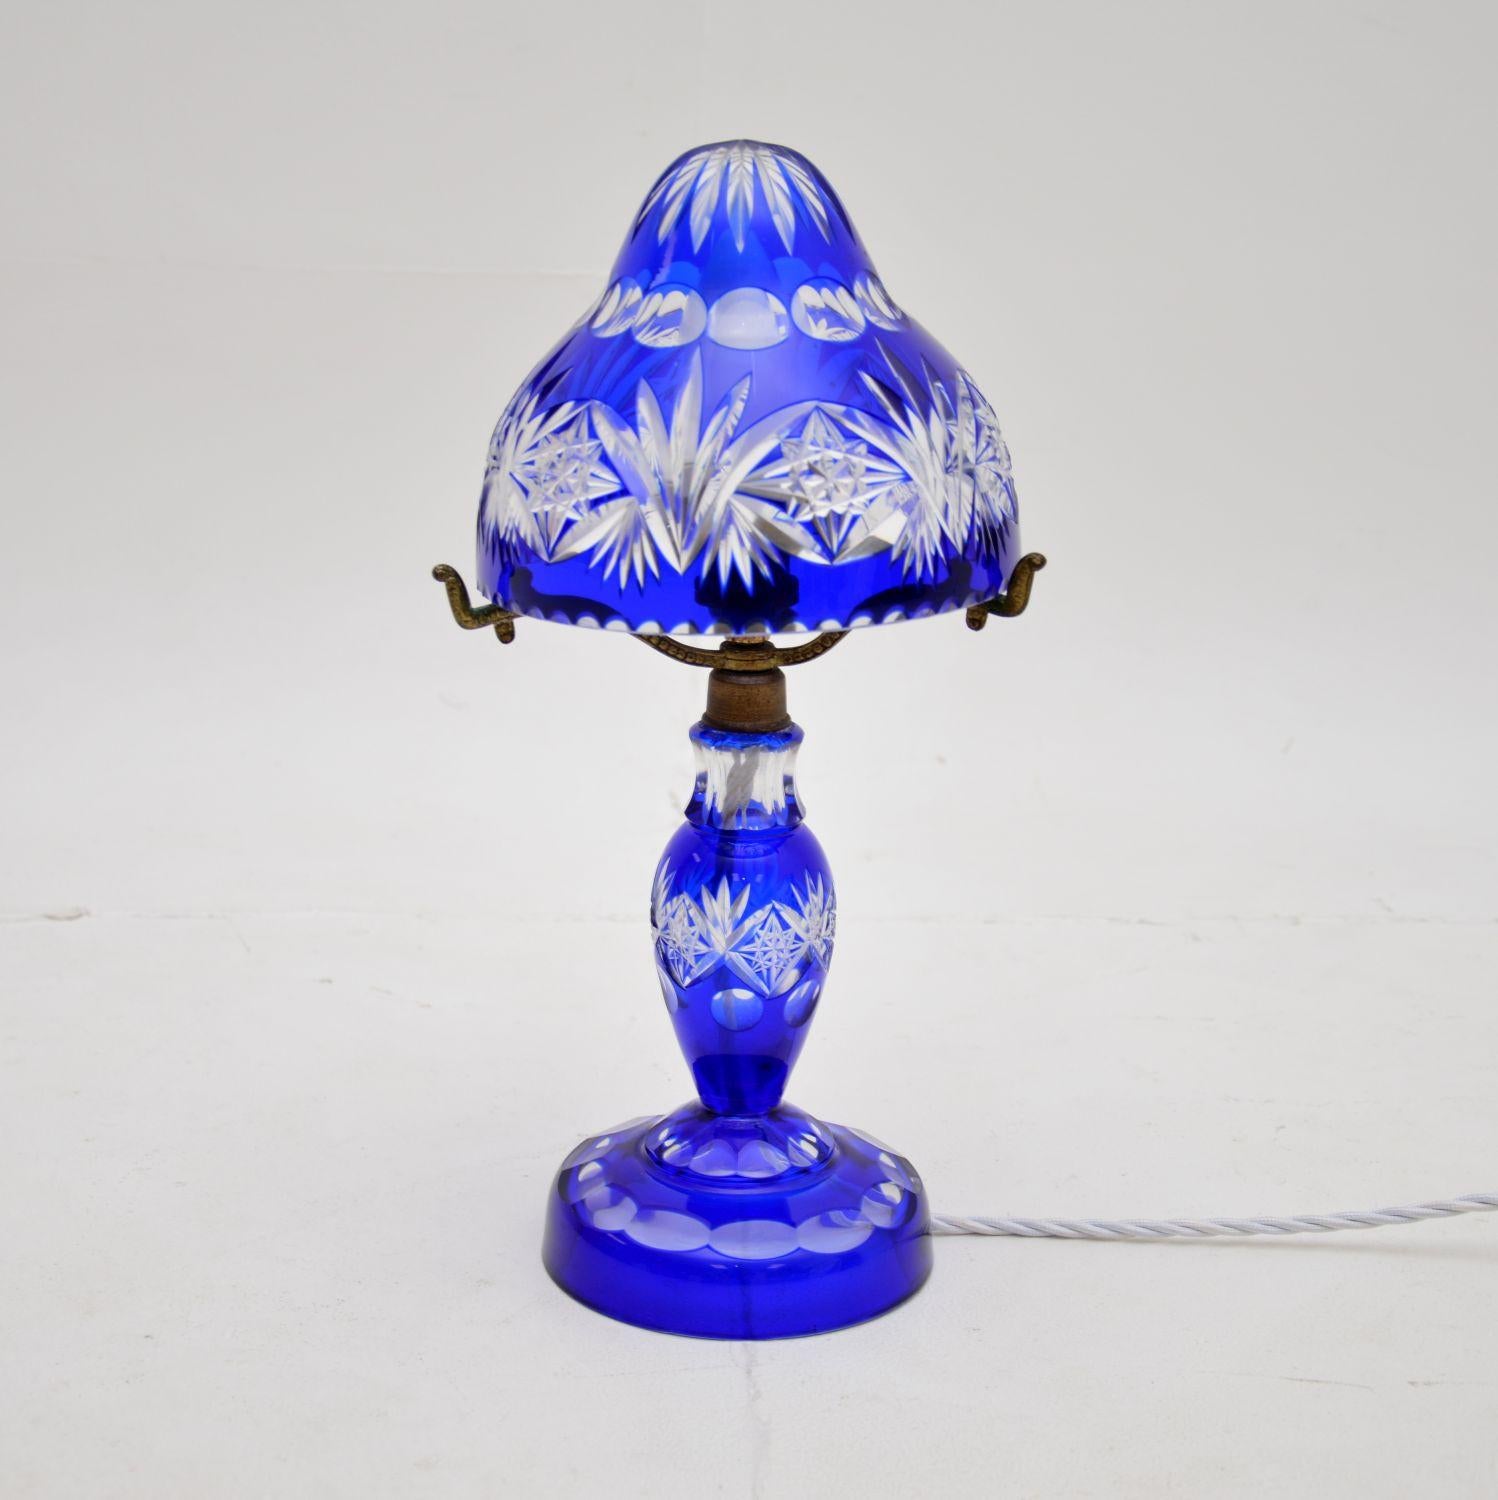 Magnifique lampe de table, vase et plat anciens en cristal de Bohème. Fabriquées en Bohemia, elles datent des années 1910-20 environ.

La qualité est fantastique, le verre de cristal transparent est orné de superbes décorations taillées à la main.